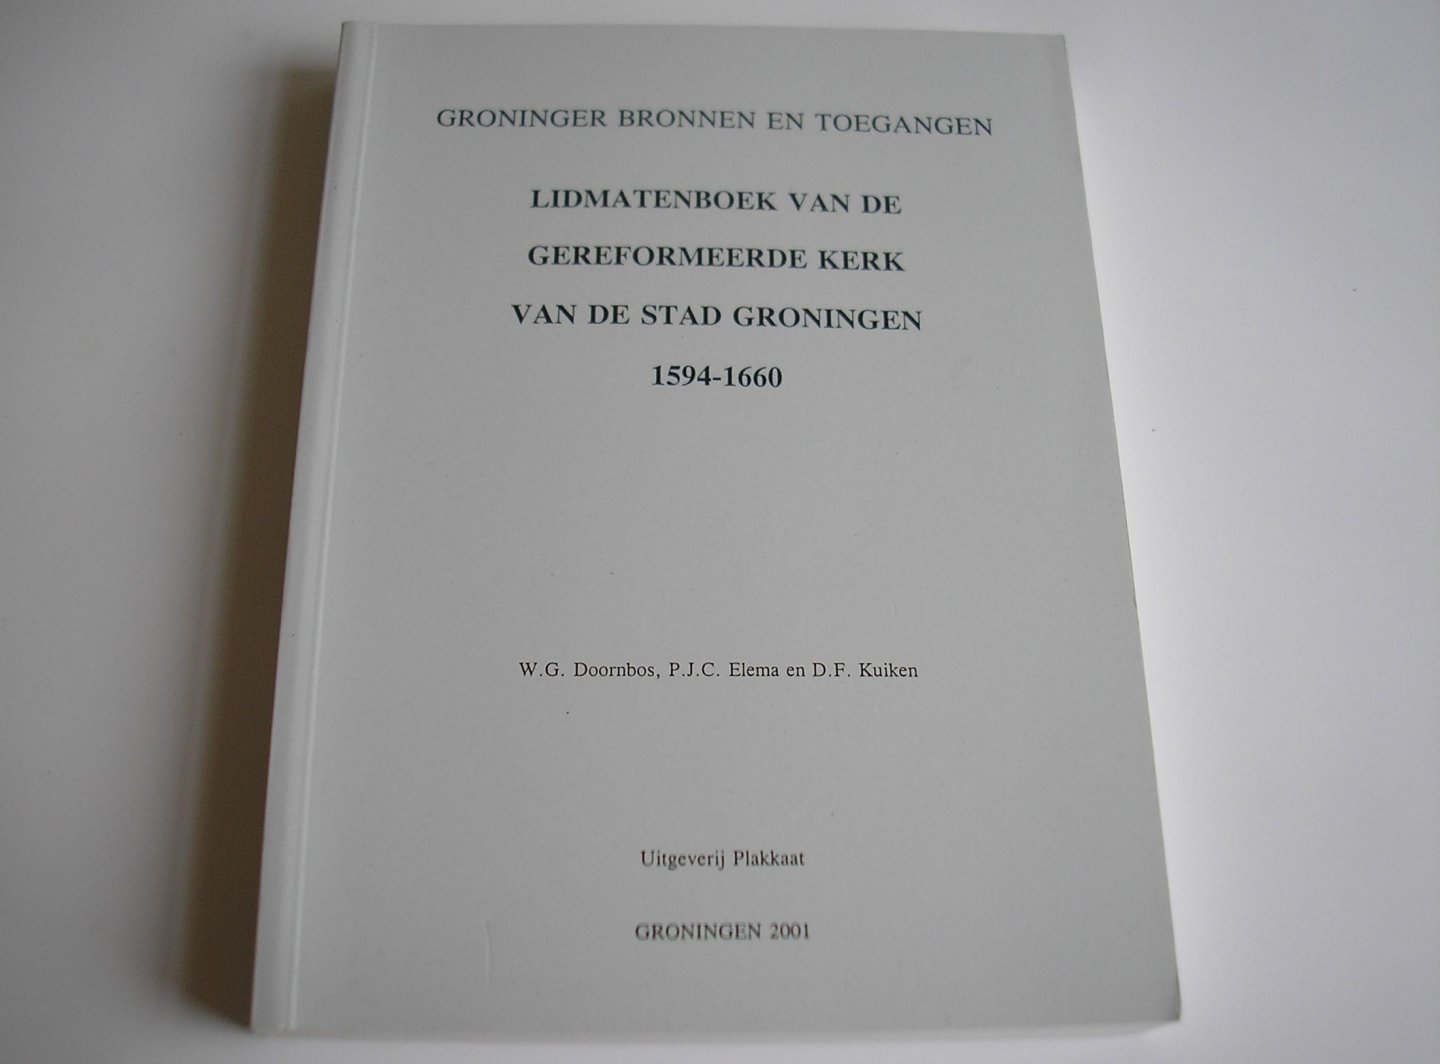 Doornbos, W.G., Elema, P.J.C., Kuiken, D.F. - Lidmatenboek van de gereformeerde kerk van de stad Groningen 1594 - 1660.